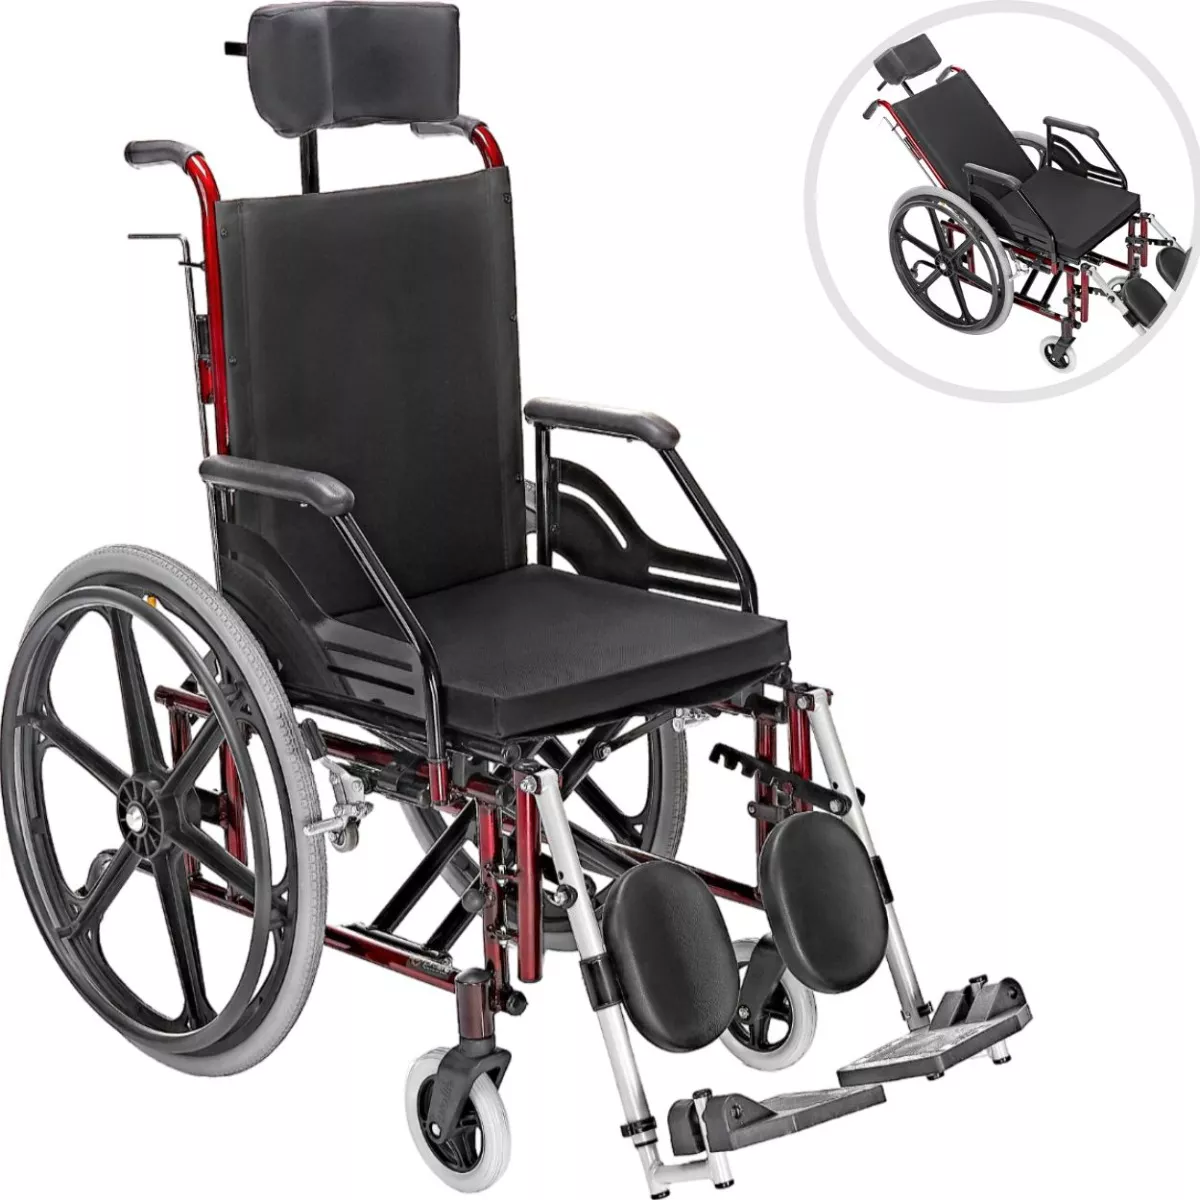 Terceira imagem para pesquisa de almofada para cadeira de rodas